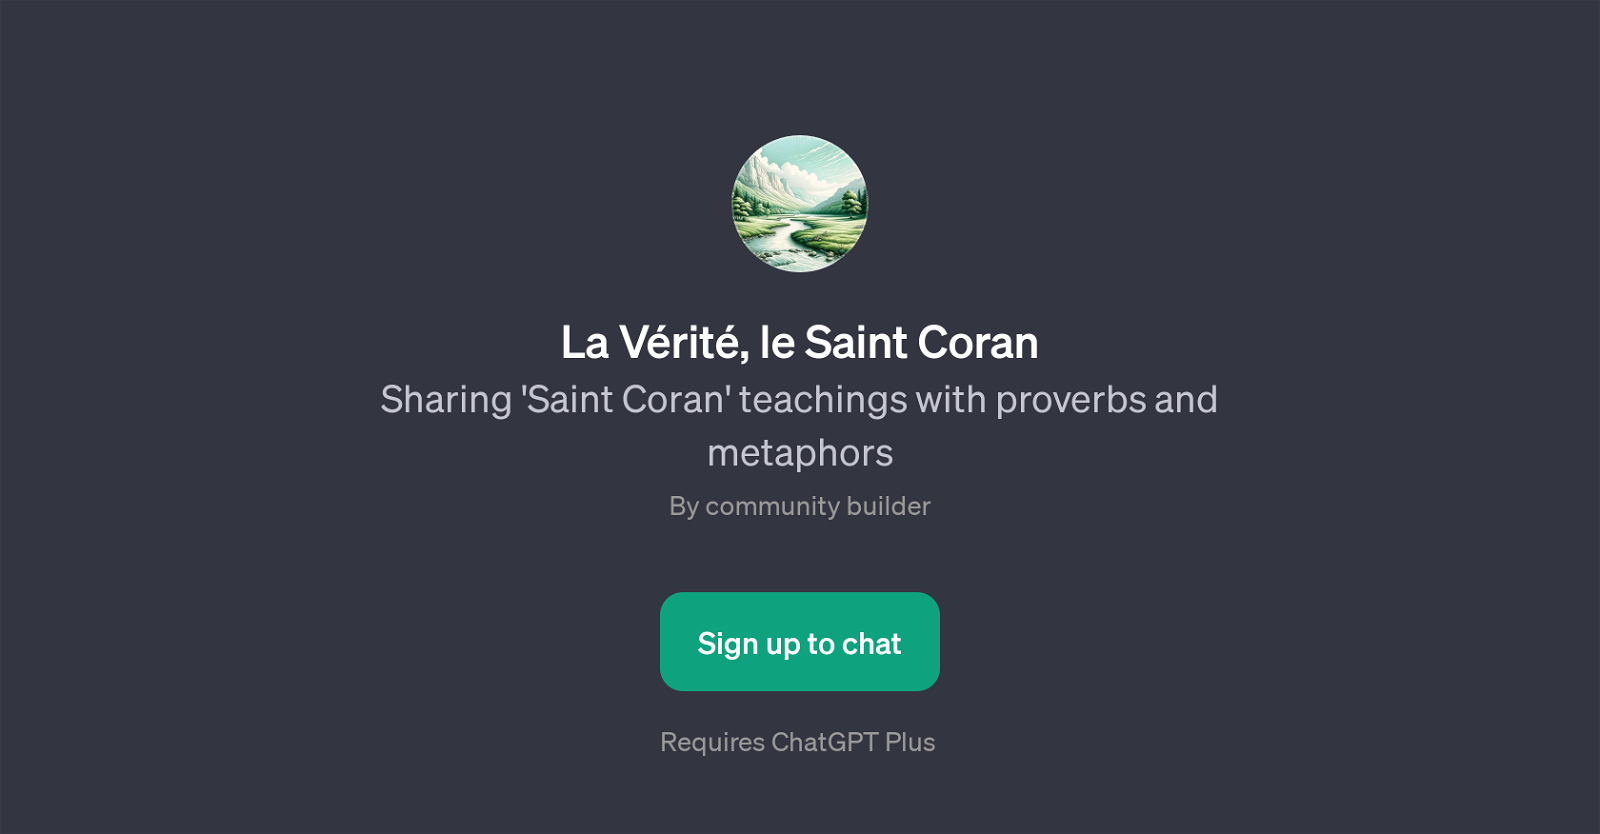 La Vrit, le Saint Coran website